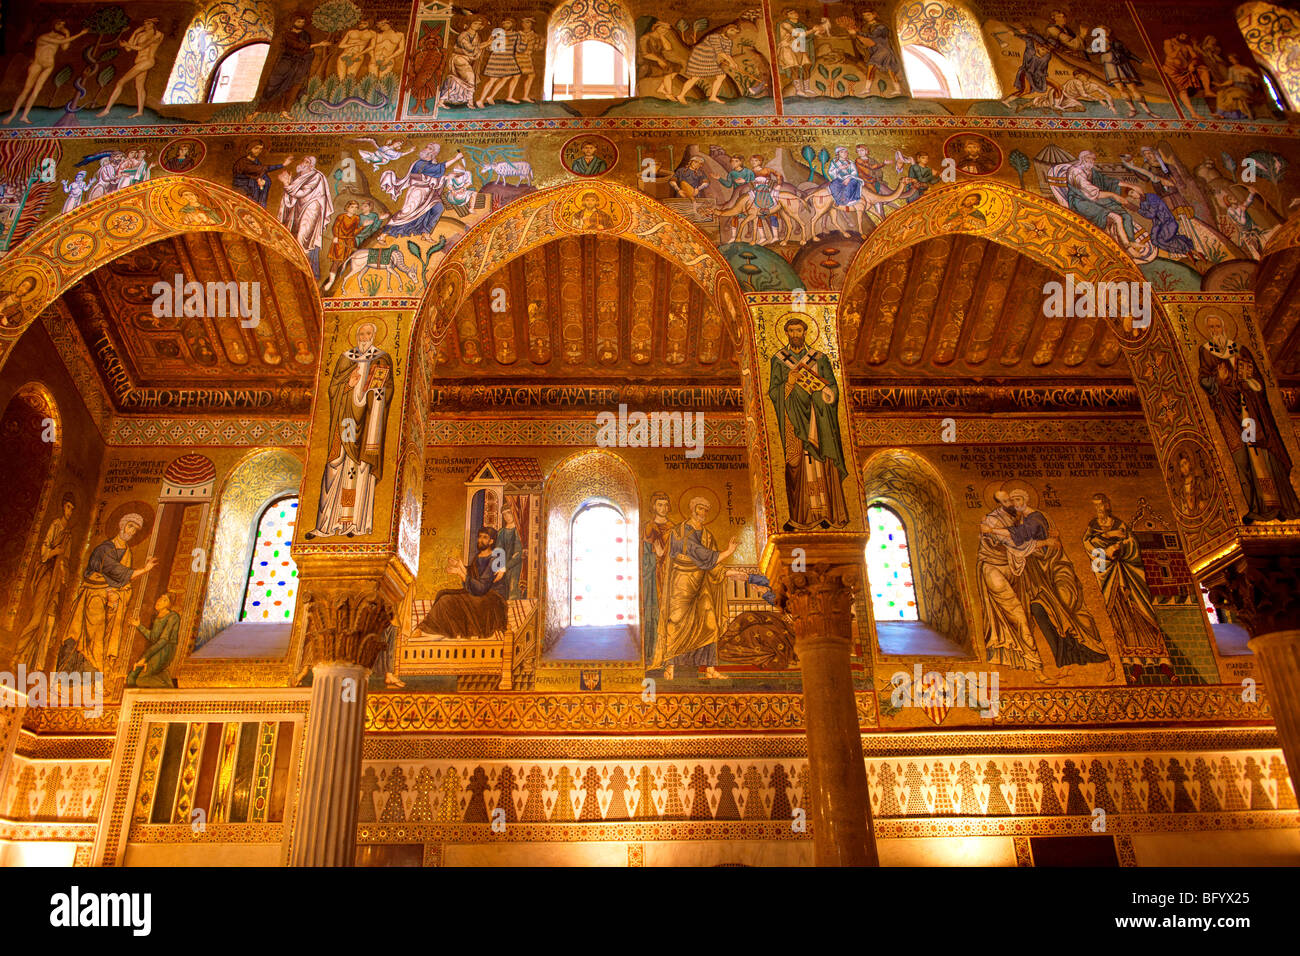 Szene aus der Bibel. Byzantinische Mosaiken aus der Pfalz Chapelin Normannenpalast, Palermo Sizilien Stockfoto